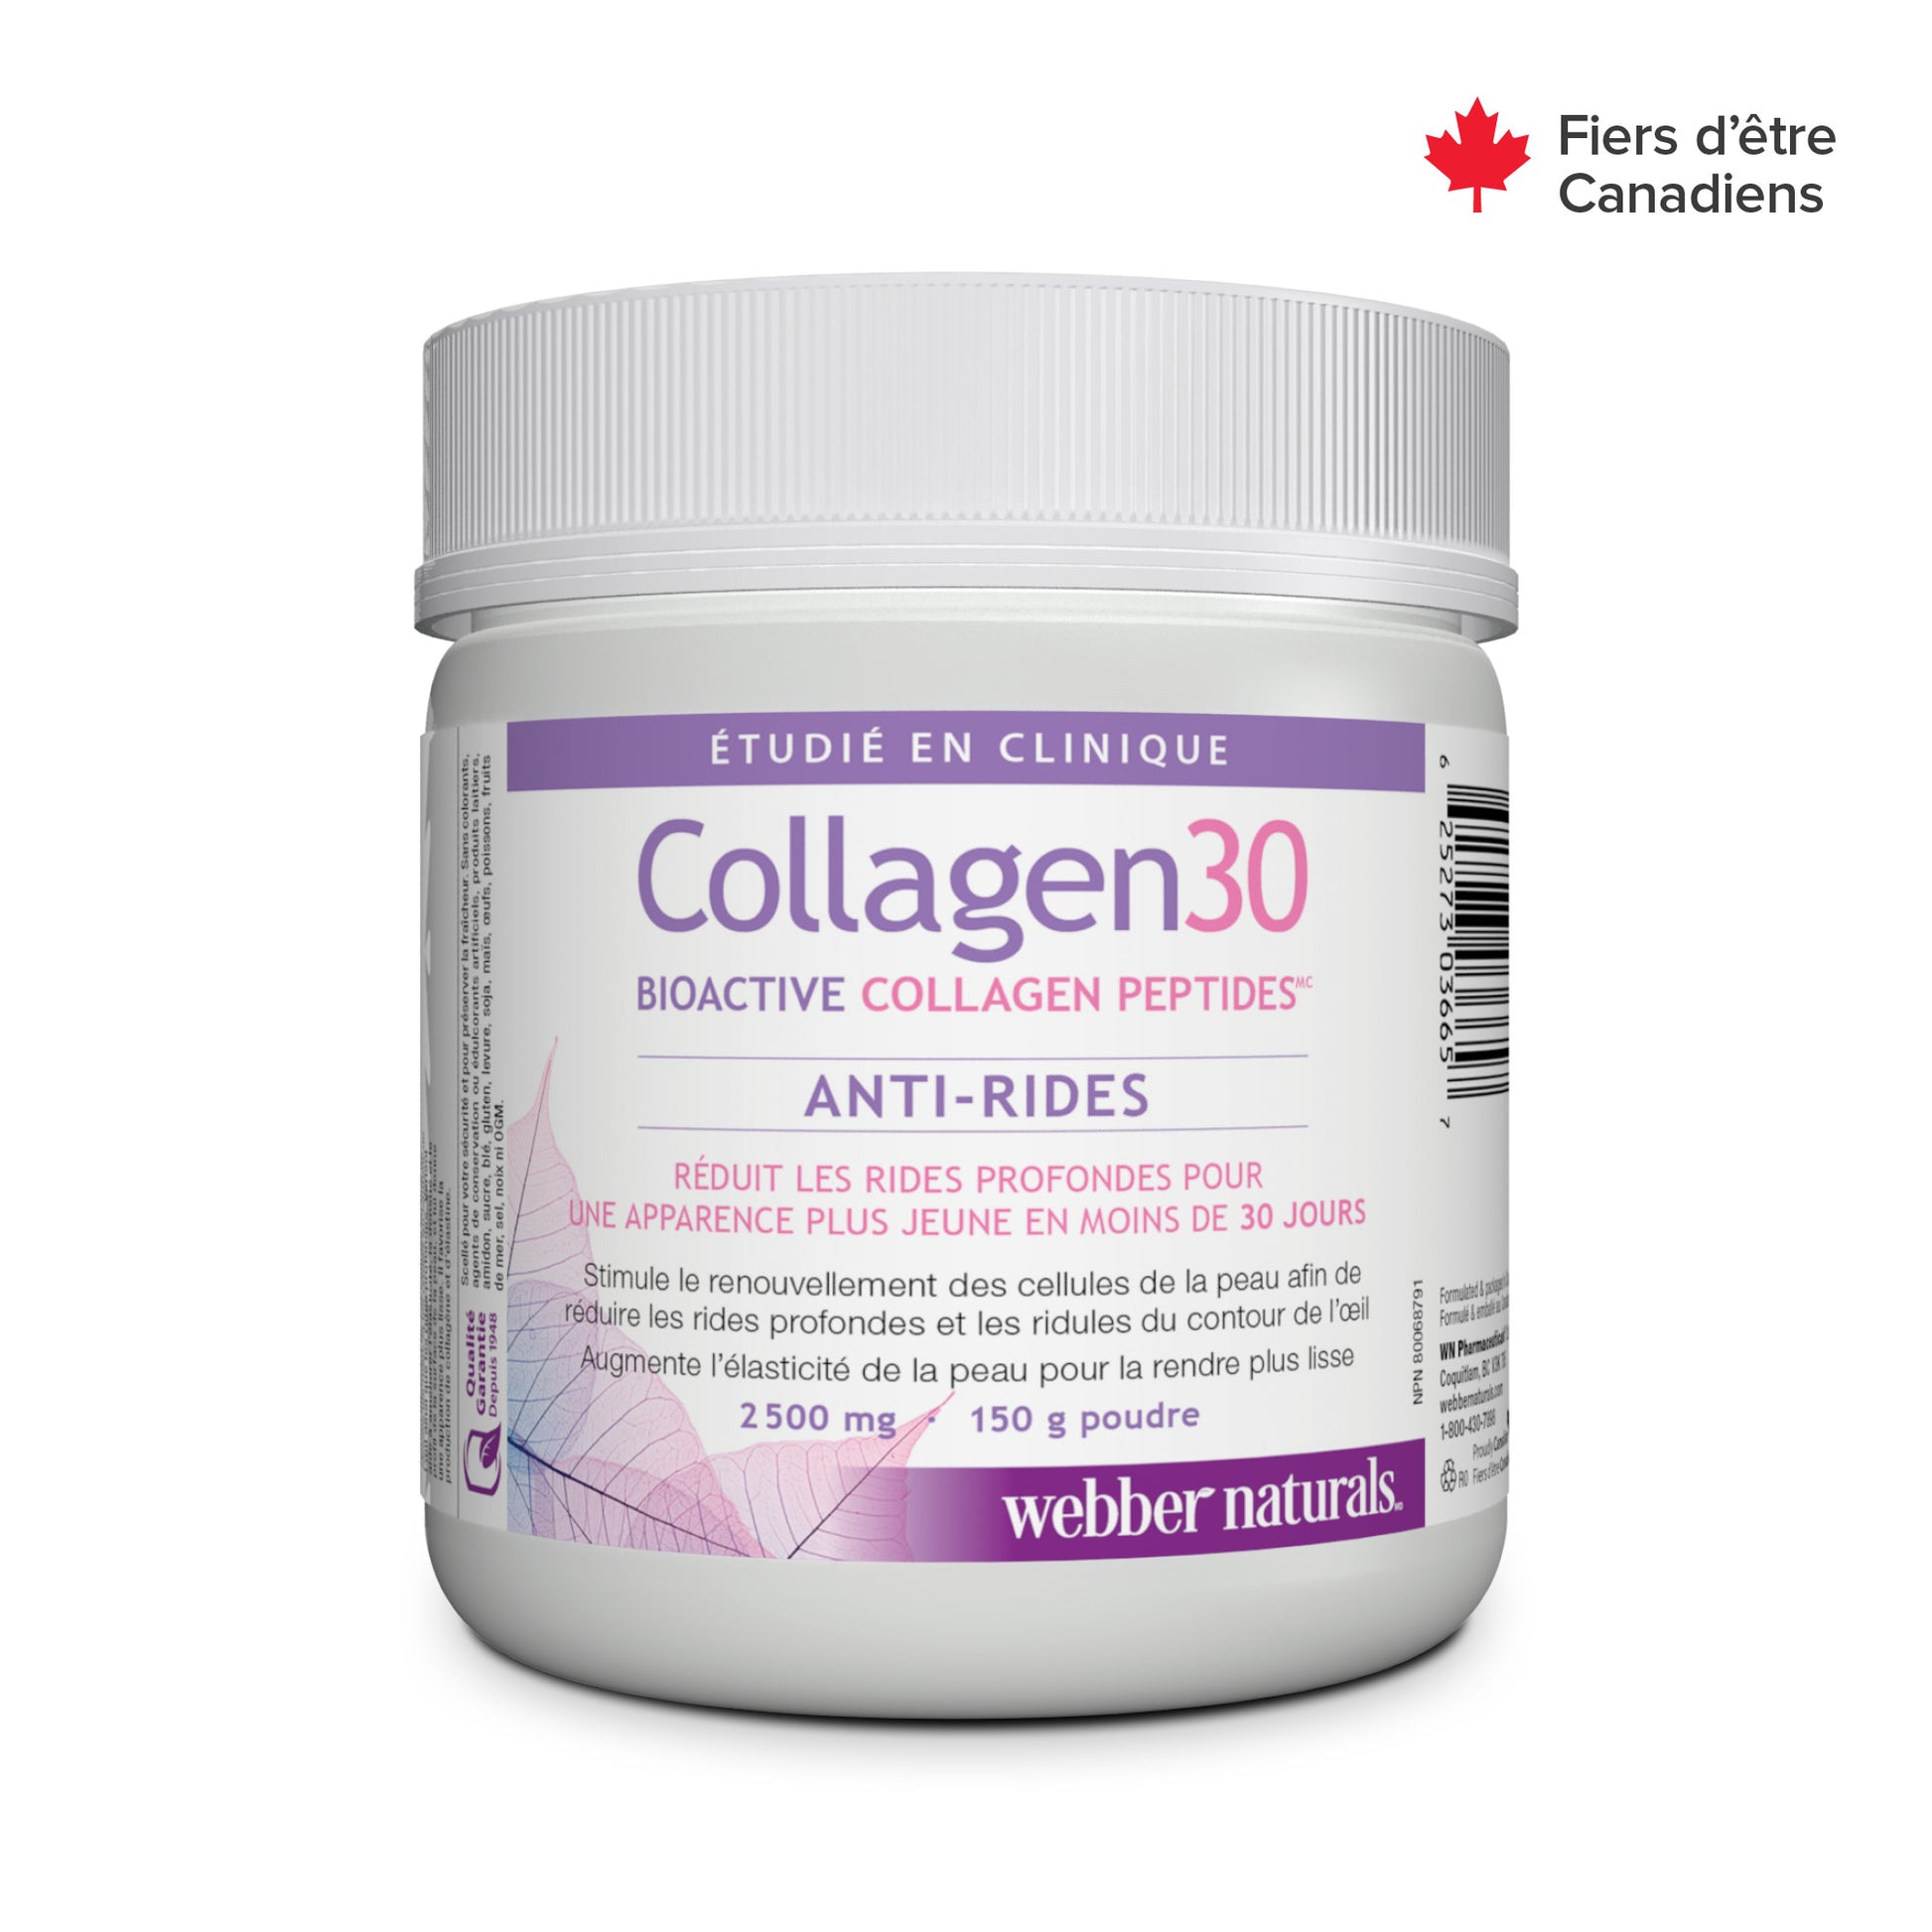 Collagen30® Bioactive Collagen Peptides 2500 mg for Webber Naturals|v|hi-res|WN3665